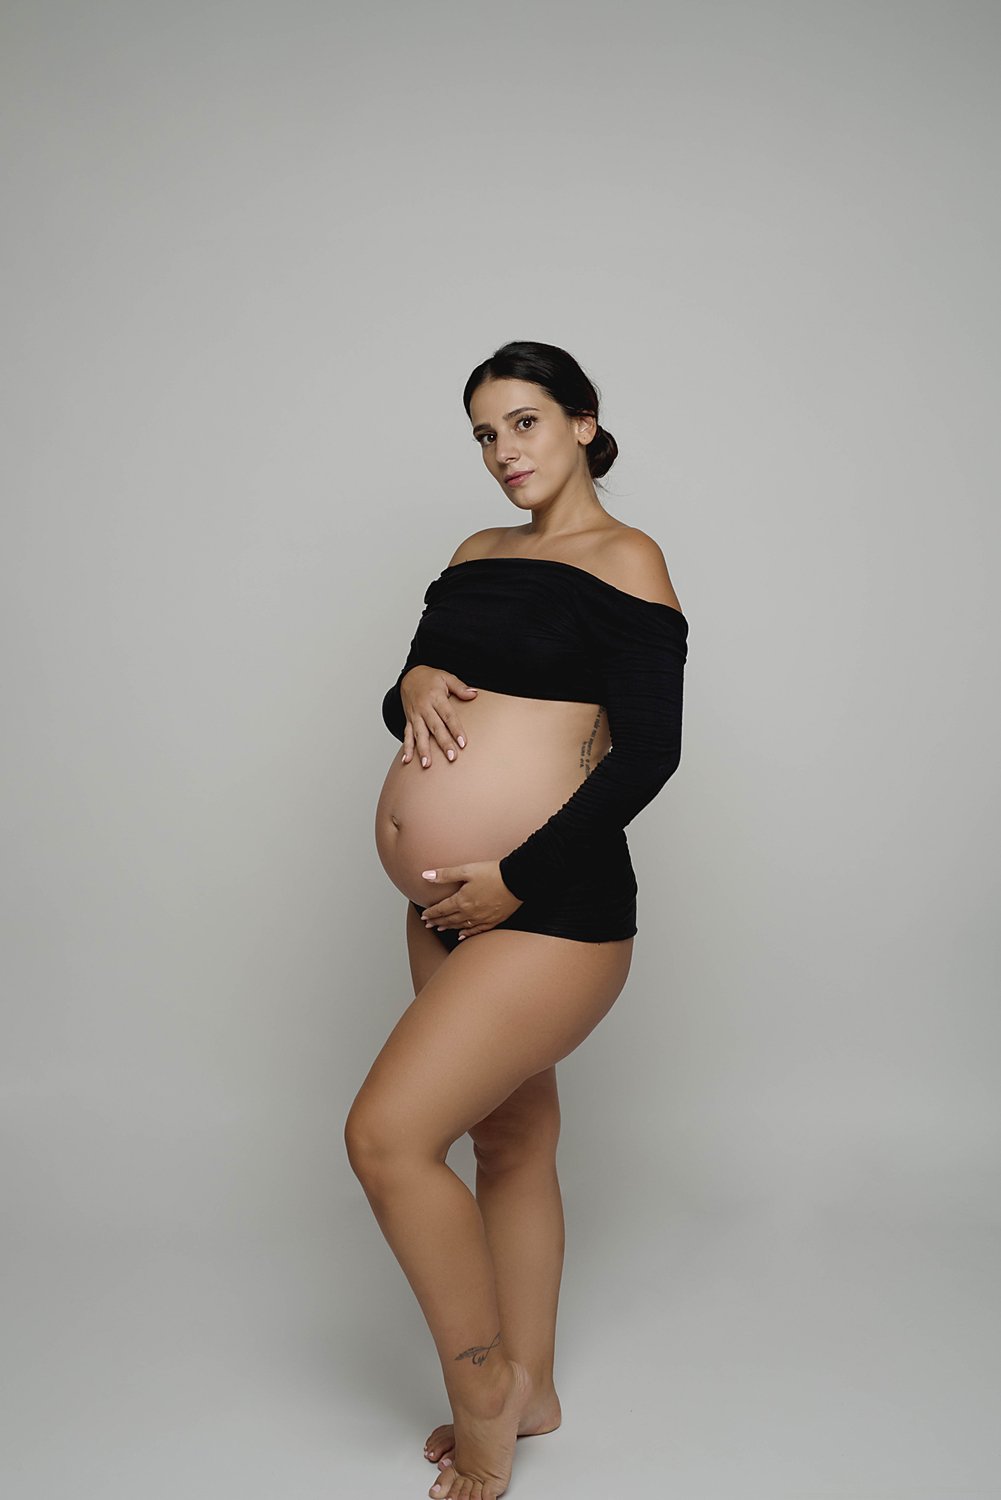 kimberly-gb-photography-maternity-maternidad-fotografia-embarazo-bebe-fotografo-puerto-rico-012.jpg